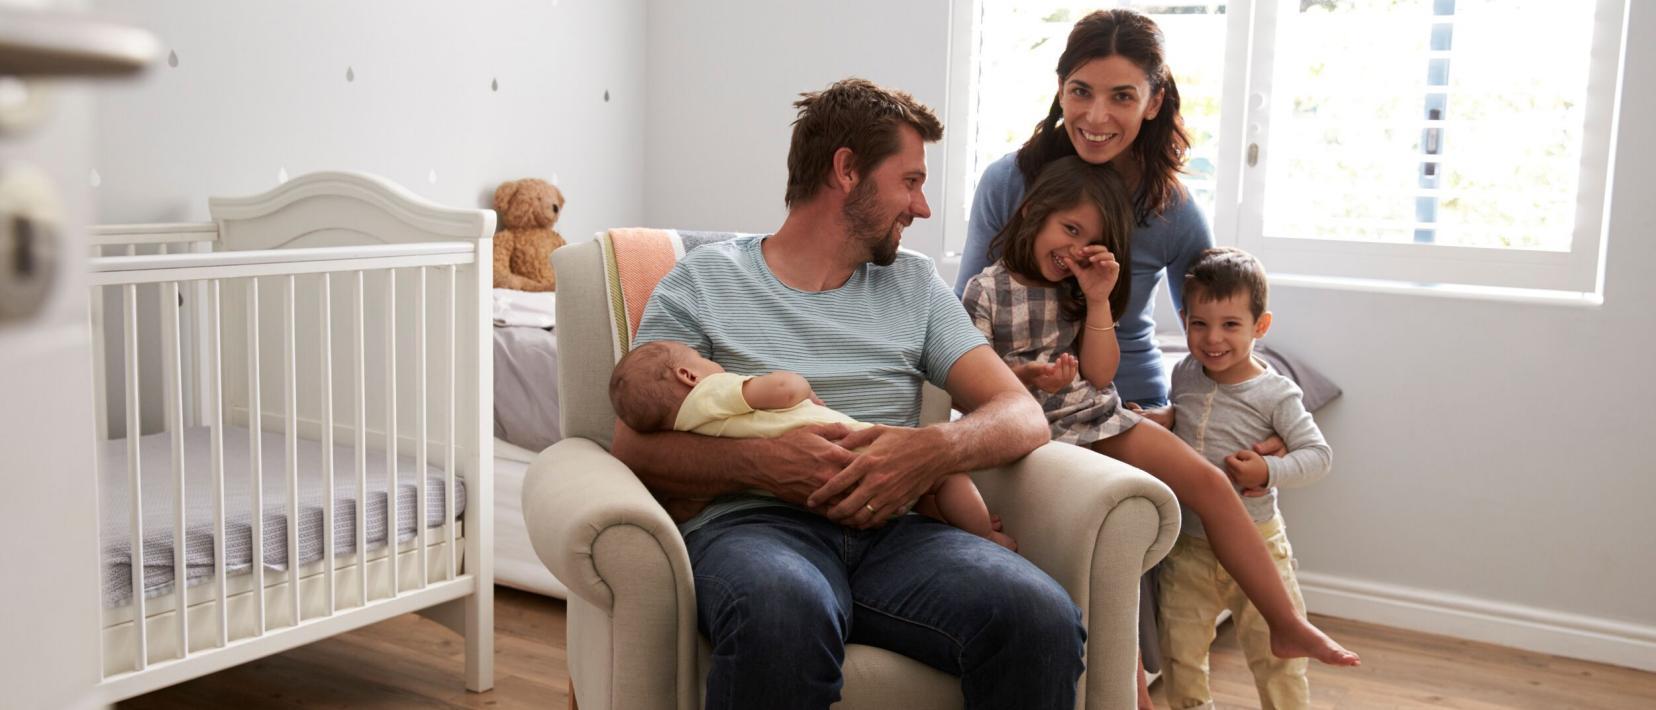 In einem hellen Raum mit Babybett und Fenster sitzt ein Mann auf einem Stuhl mit einem Baby im Arm und neben ihm hält eine Frau zwei Kleinkinder im Arm.